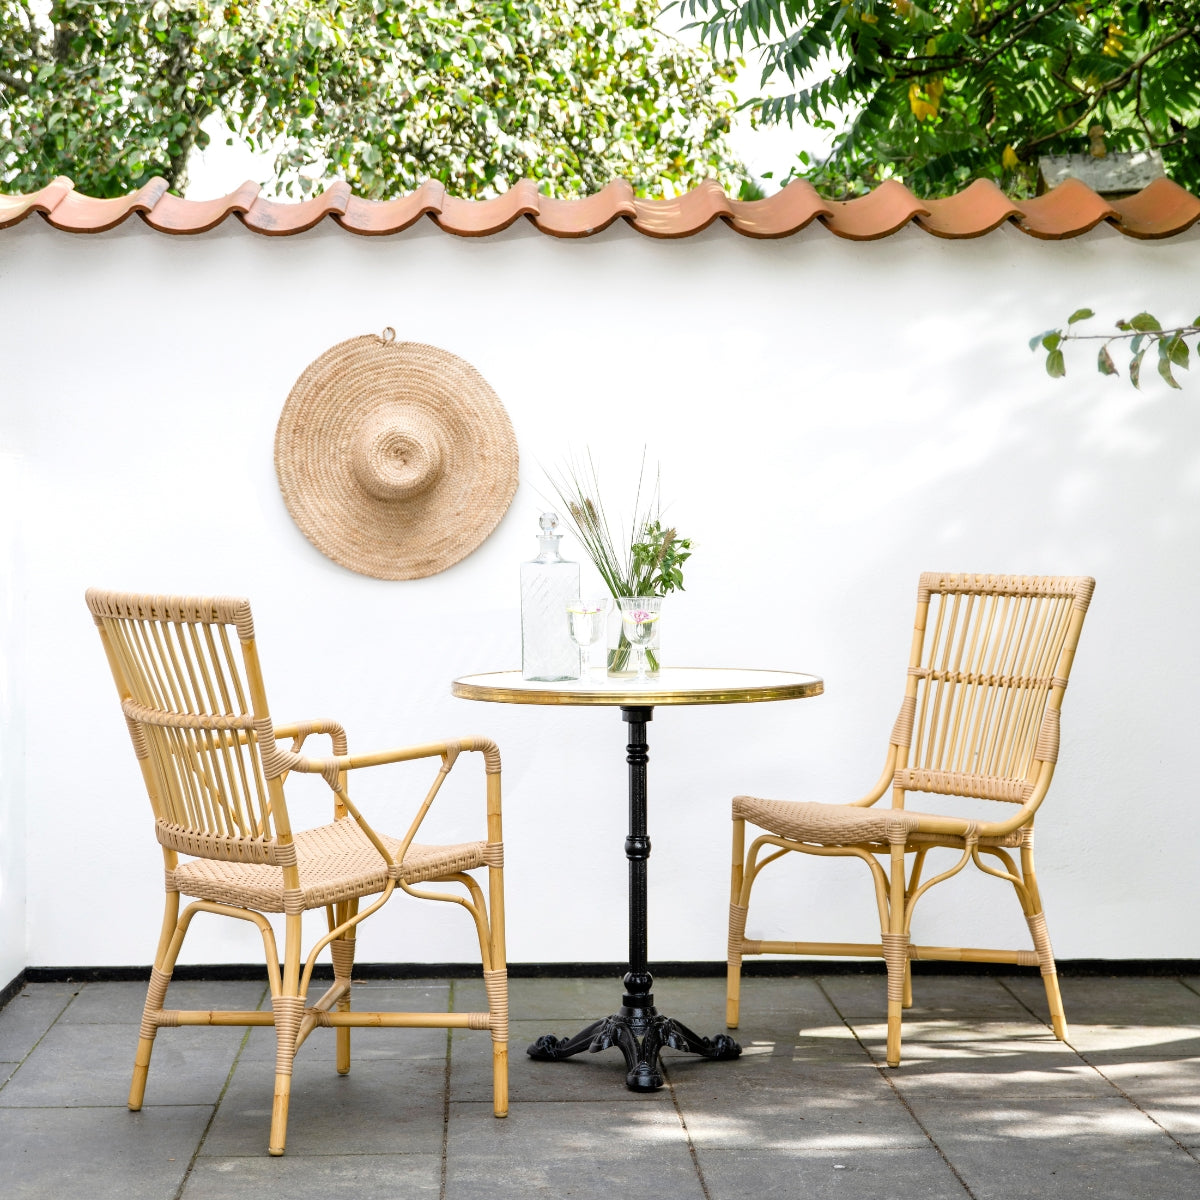 Sika-Design | Lyon Cafébord - Outdoor